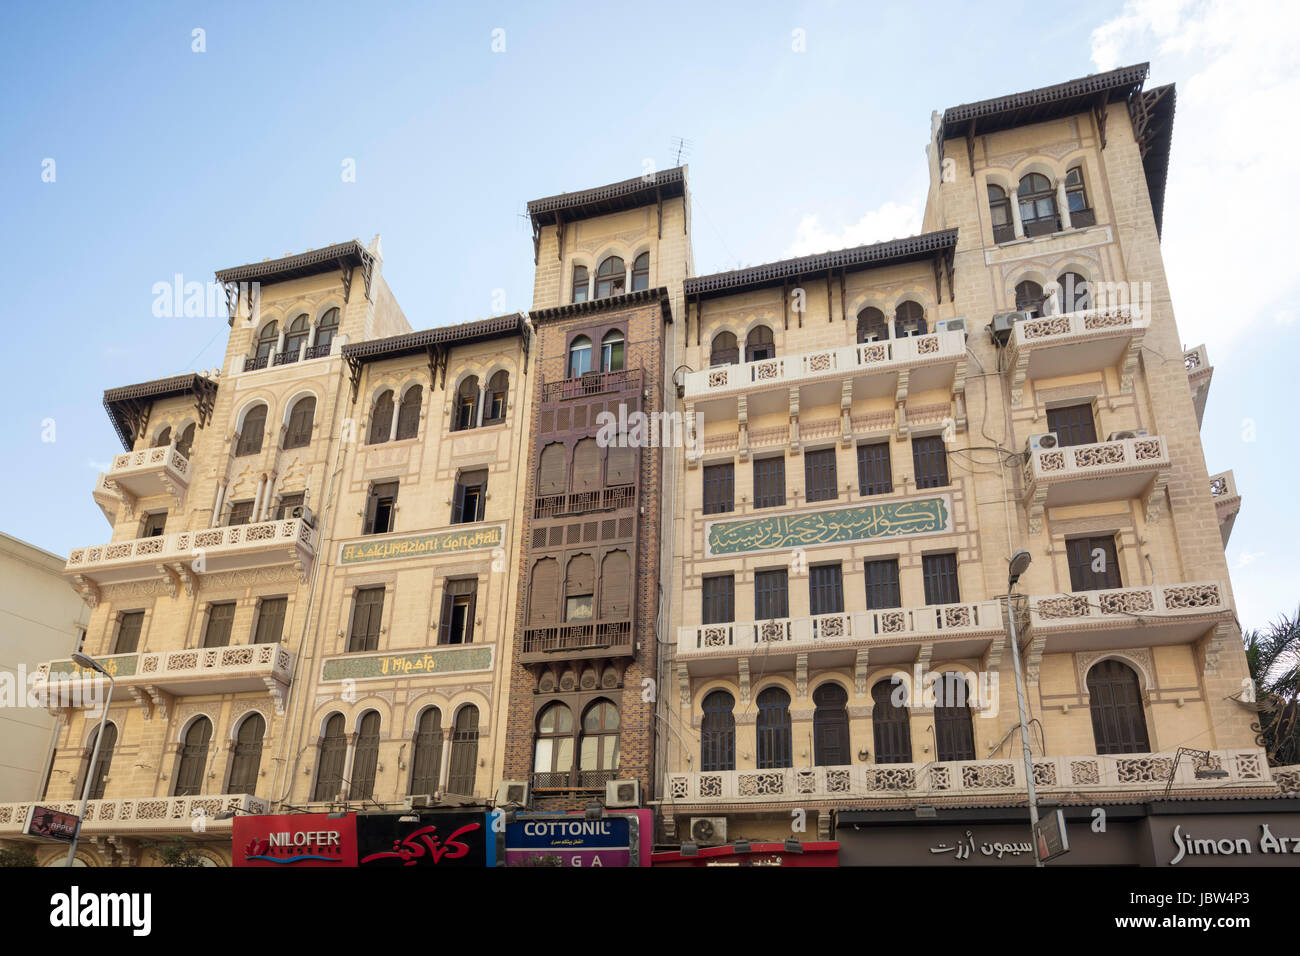 Assicurazione Generali Insurance Company building, Cairo, Egypt Stock Photo